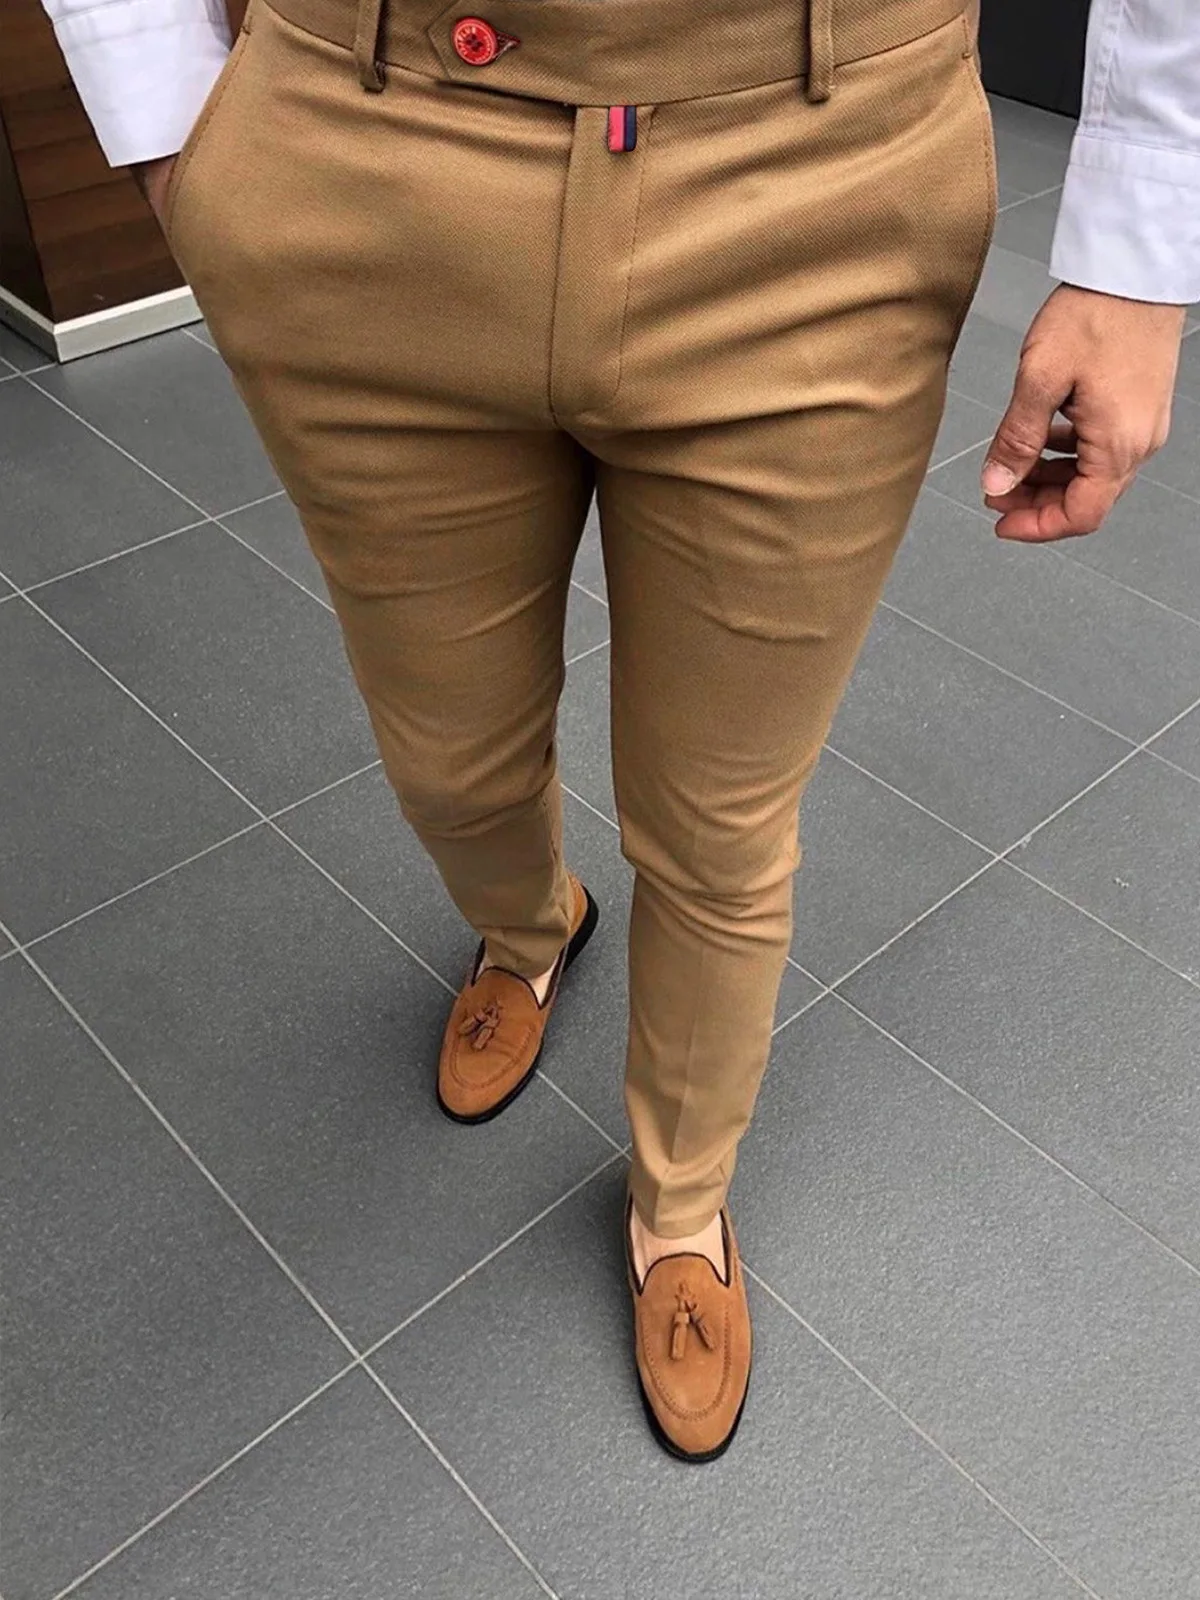 New Fashion Men's Suits Pants Slim Fit Pencil Pants Vintage Solid Color Buttoned Business Casual Trousers Male Clothes Pants Man 2